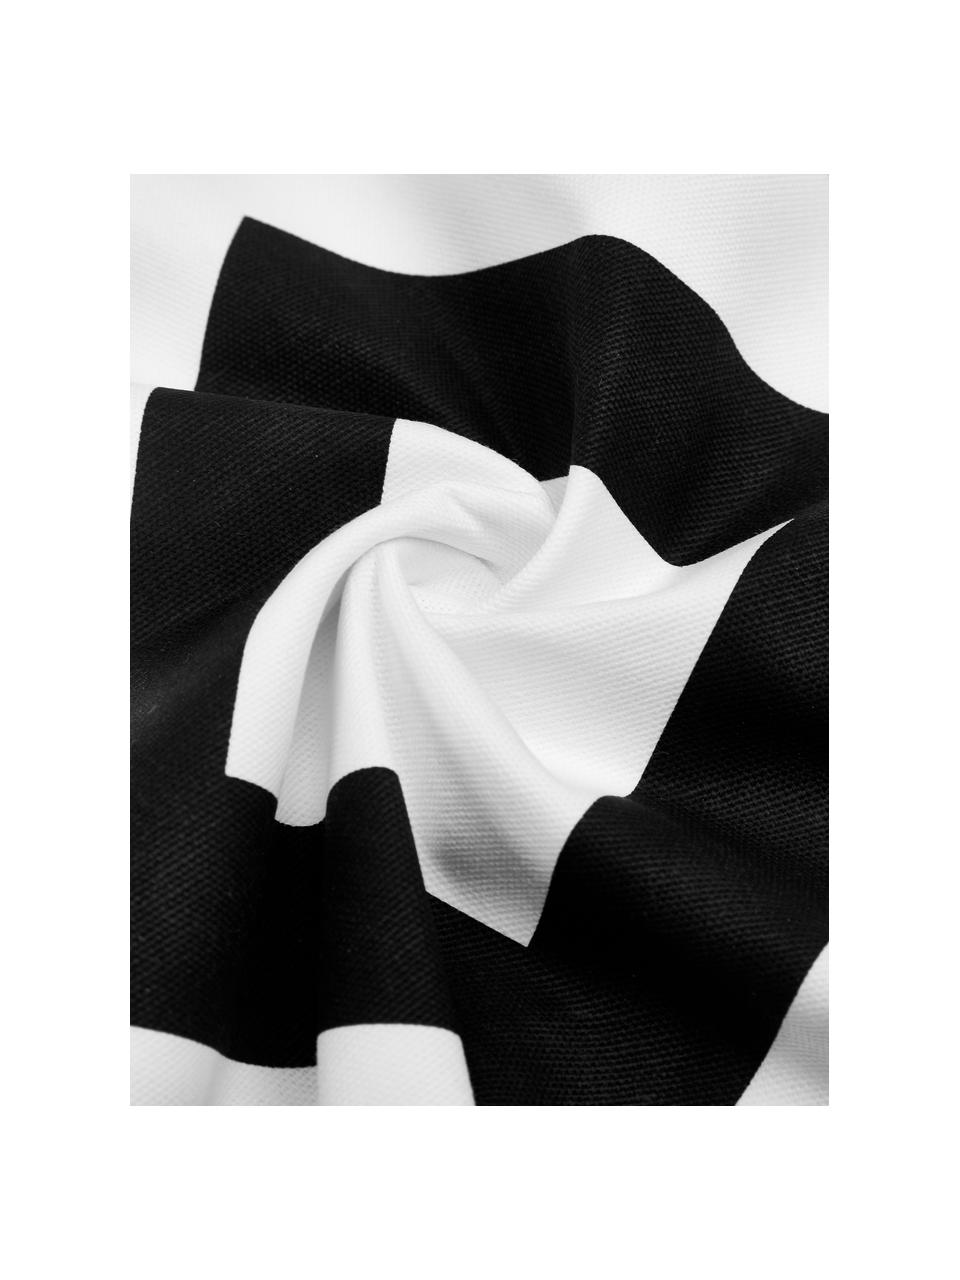 Kussenhoes Sera in zwart/wit met grafisch patroon, 100% katoen, Wit & zwart, patroon, B 45 x L 45 cm